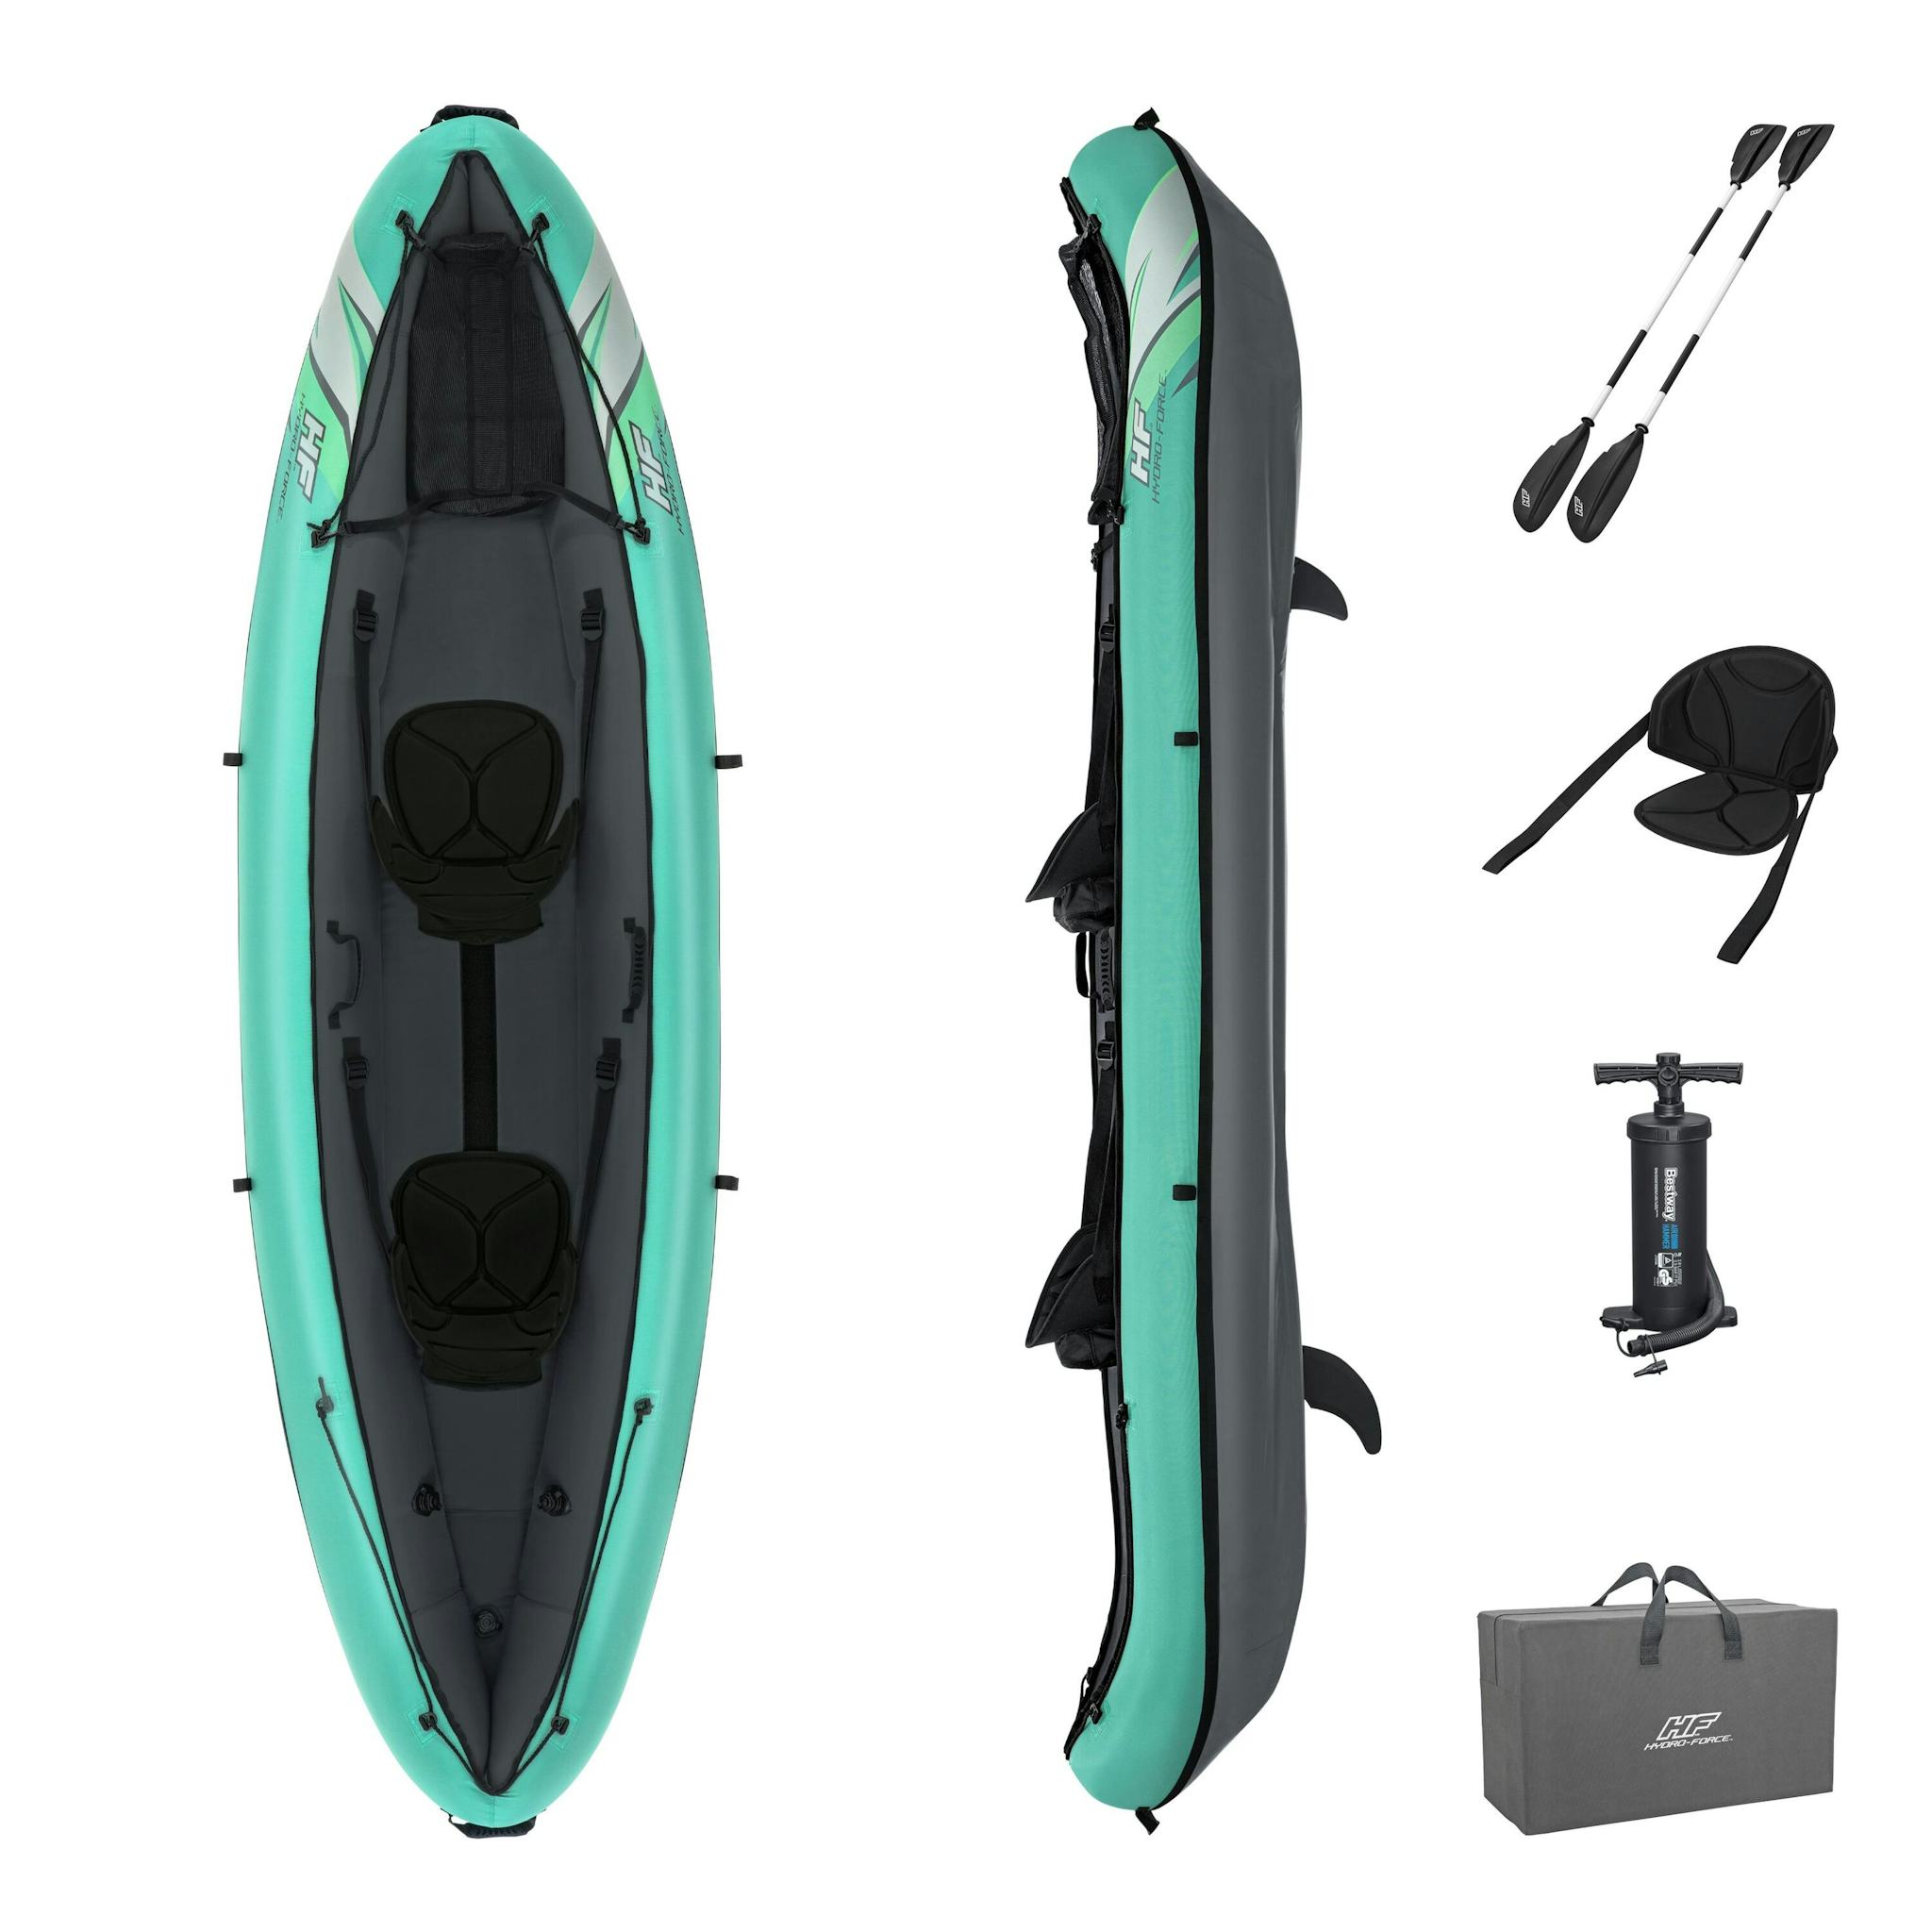 Sports d'eau Kayak gonflable Hydro-Force™ Ventura Elite X2 330 x 86 cm 2 adultes, pagaie, pompe Bestway 11